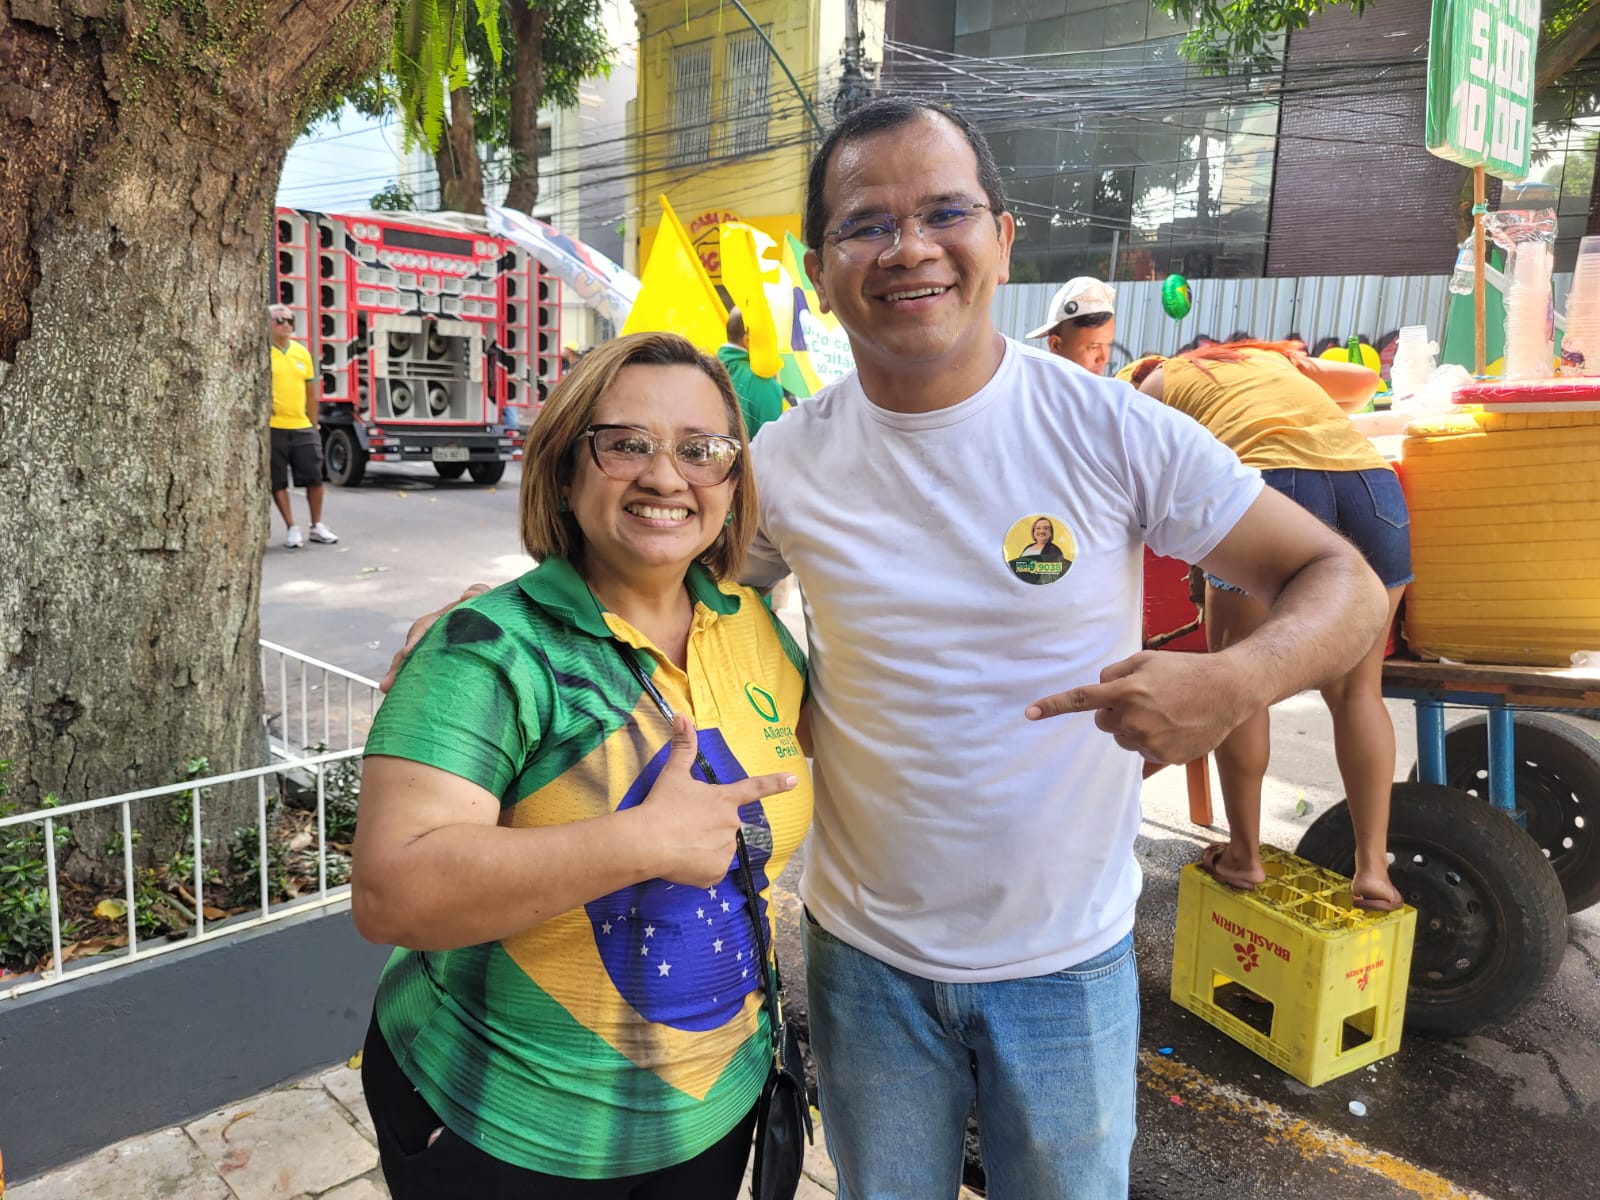 Shirley Alves ao lado do eleitorado durante a caminhada. (Foto: Fernanda Cavalcanti / Redação Belem.com.br)